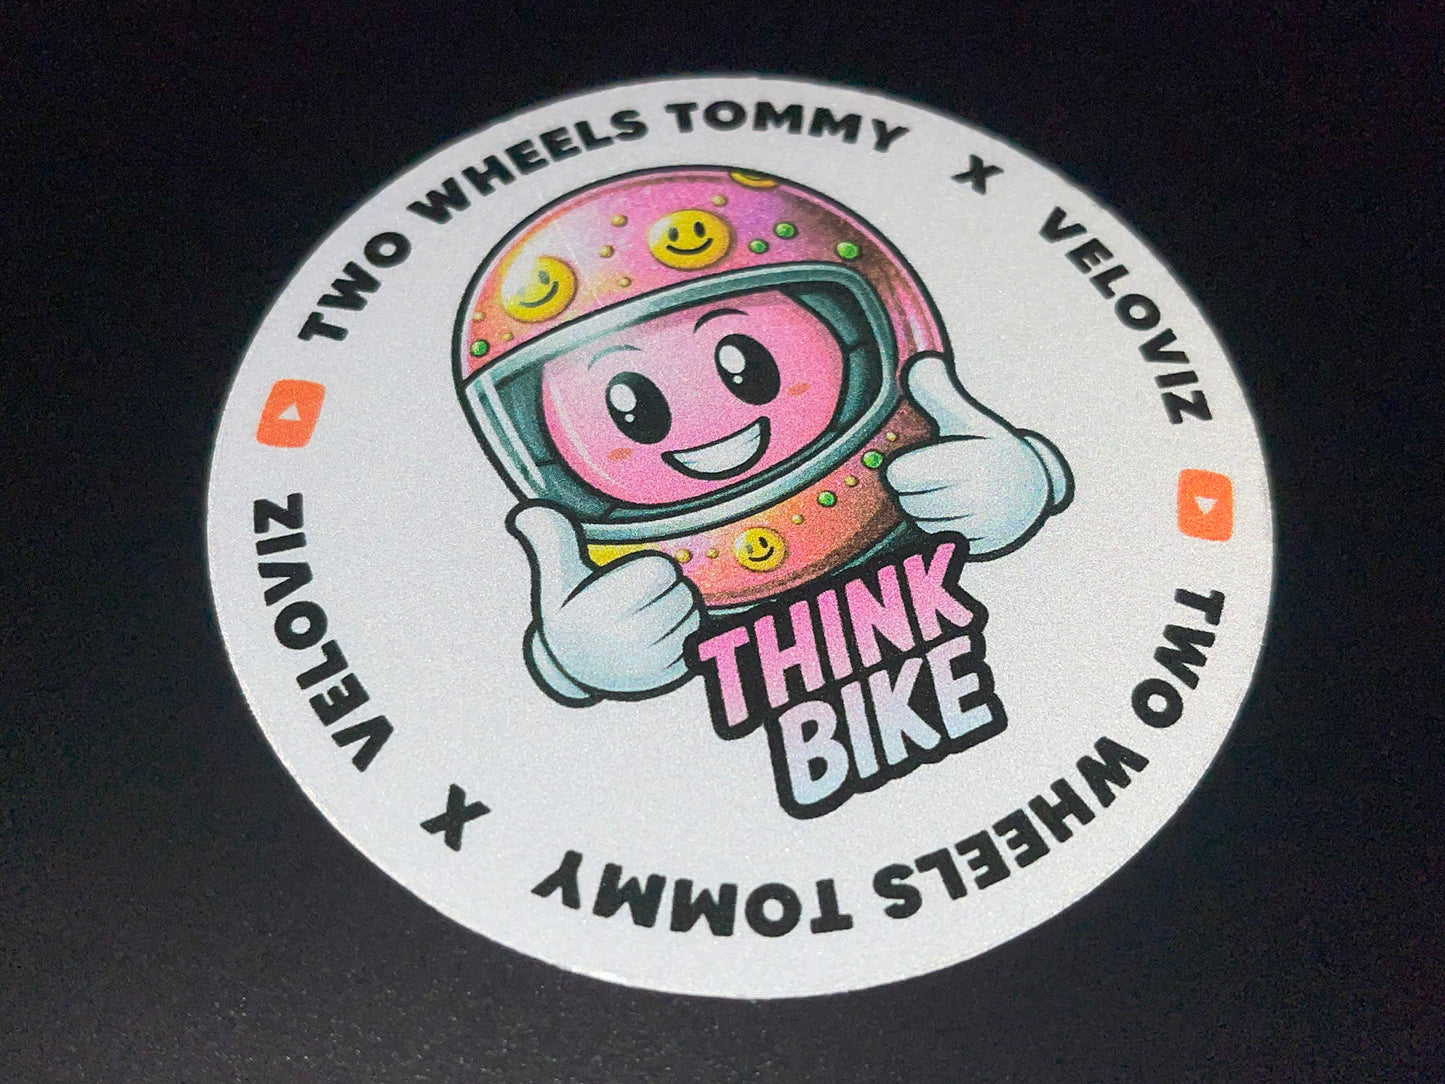 Veloviz X Two Wheels Tommy Reflective Think Bike Sticker